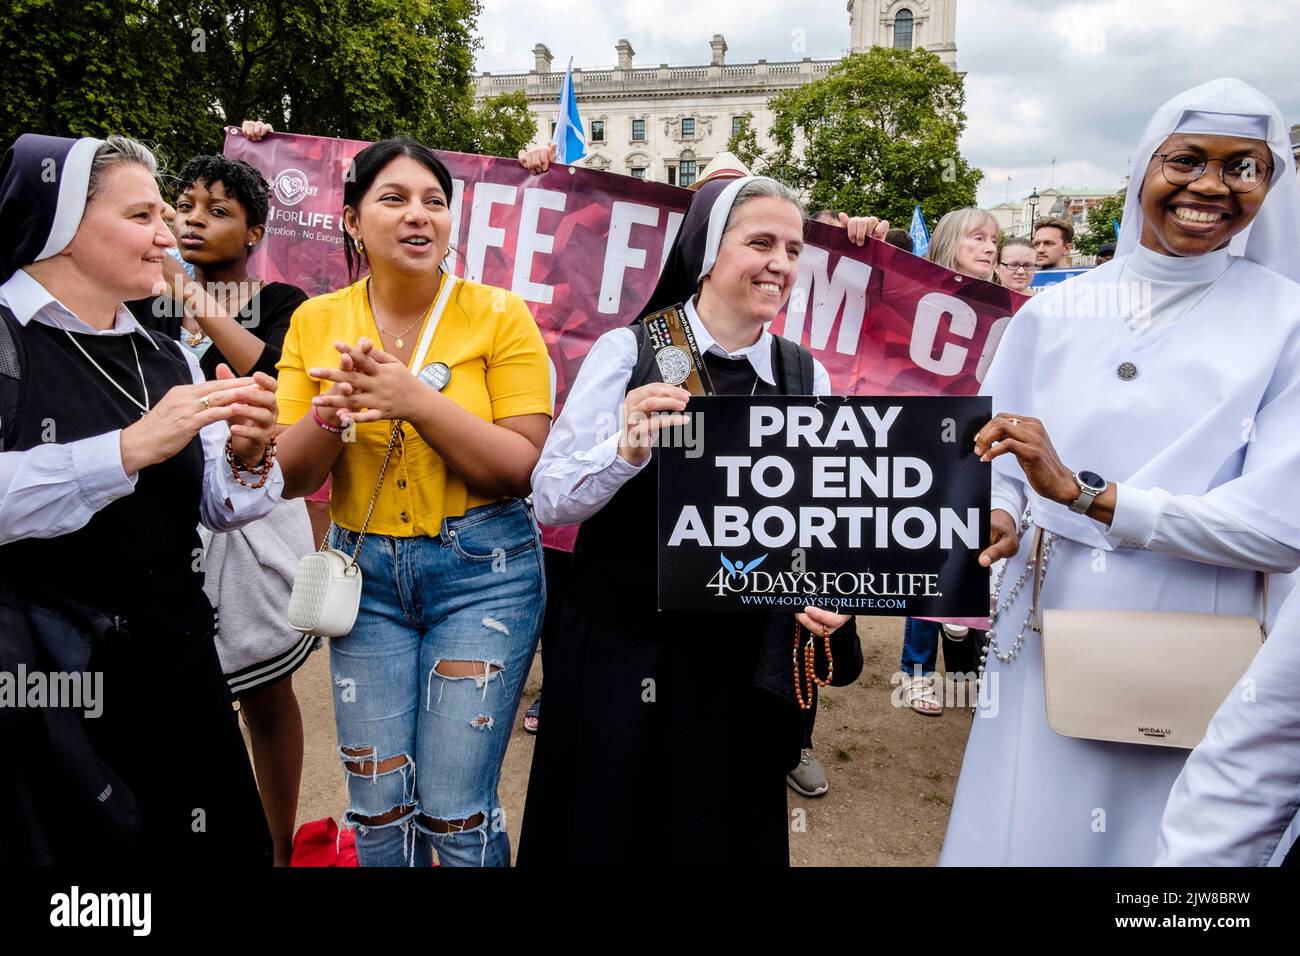 Londres, Reino Unido. 3 de septiembre de 2022. Miembros de grupos antiaborto se reúnen en Parliament Square, Westminster, después de una 'Marcha por la Vida' anual en el centro de Londres. Los defensores del aborto también se reúnen para expresar su oposición al movimiento antiabortista. En la foto: Durante el mitin, activistas sostienen pancartas que muestran mensajes contra el aborto. Foto de stock